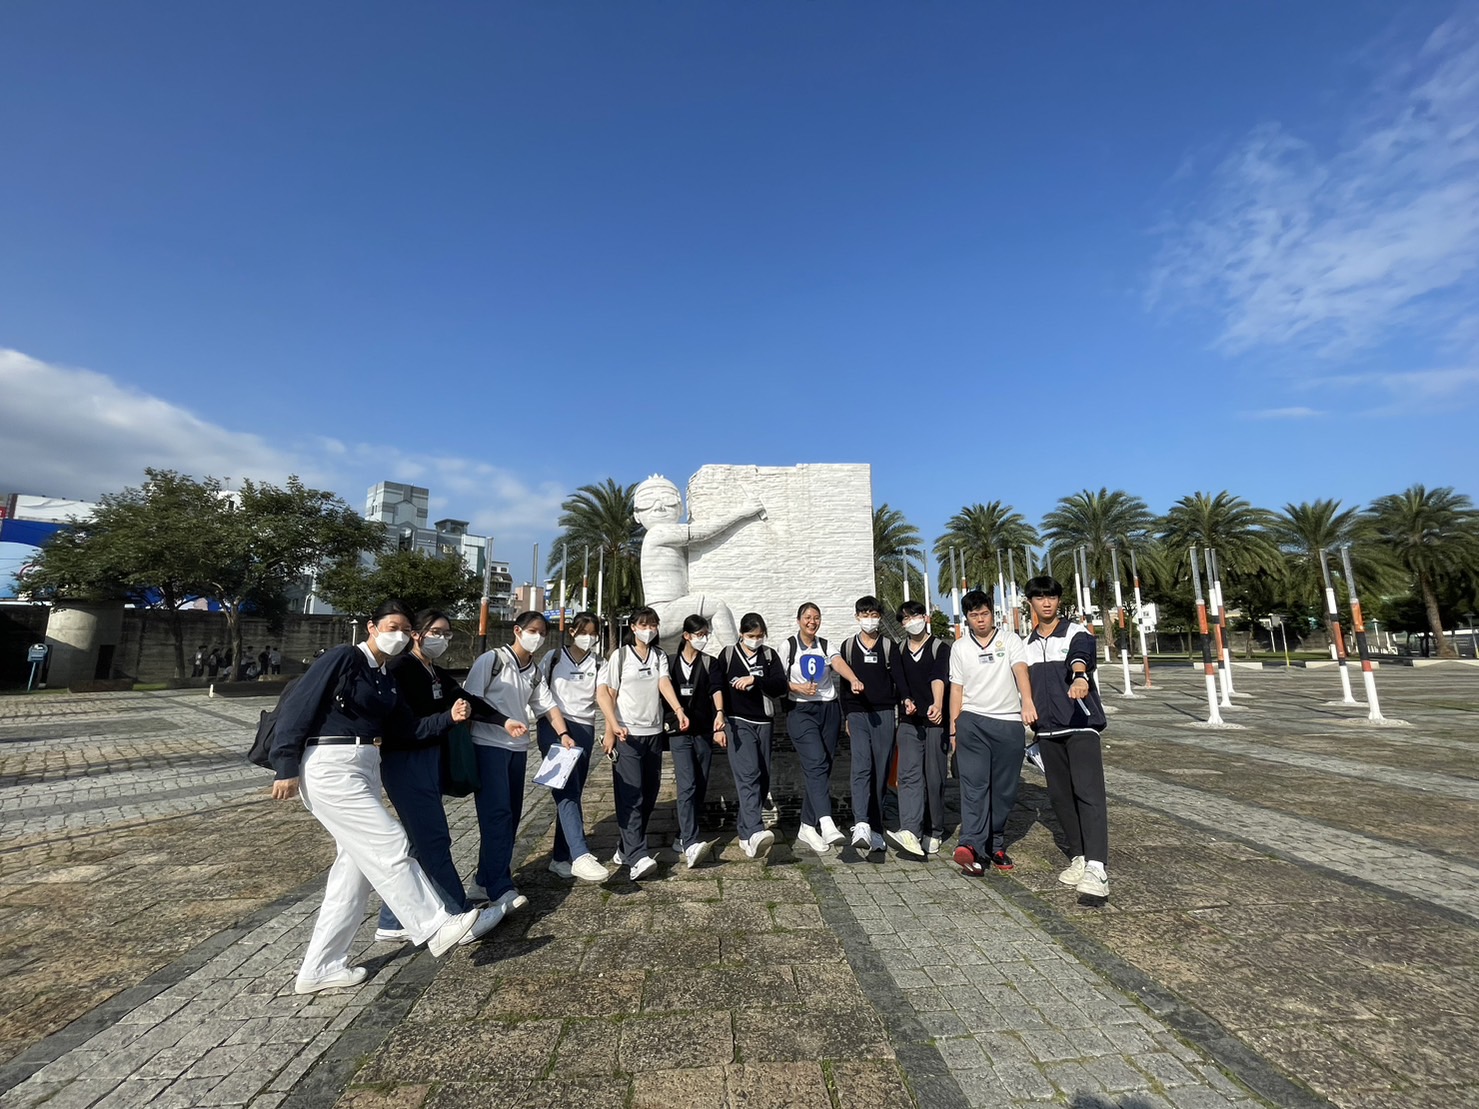 下午的港市尋蹤路線從自由廣場出發，學生踏查當年歷史遺跡，認識花蓮港市的發展。